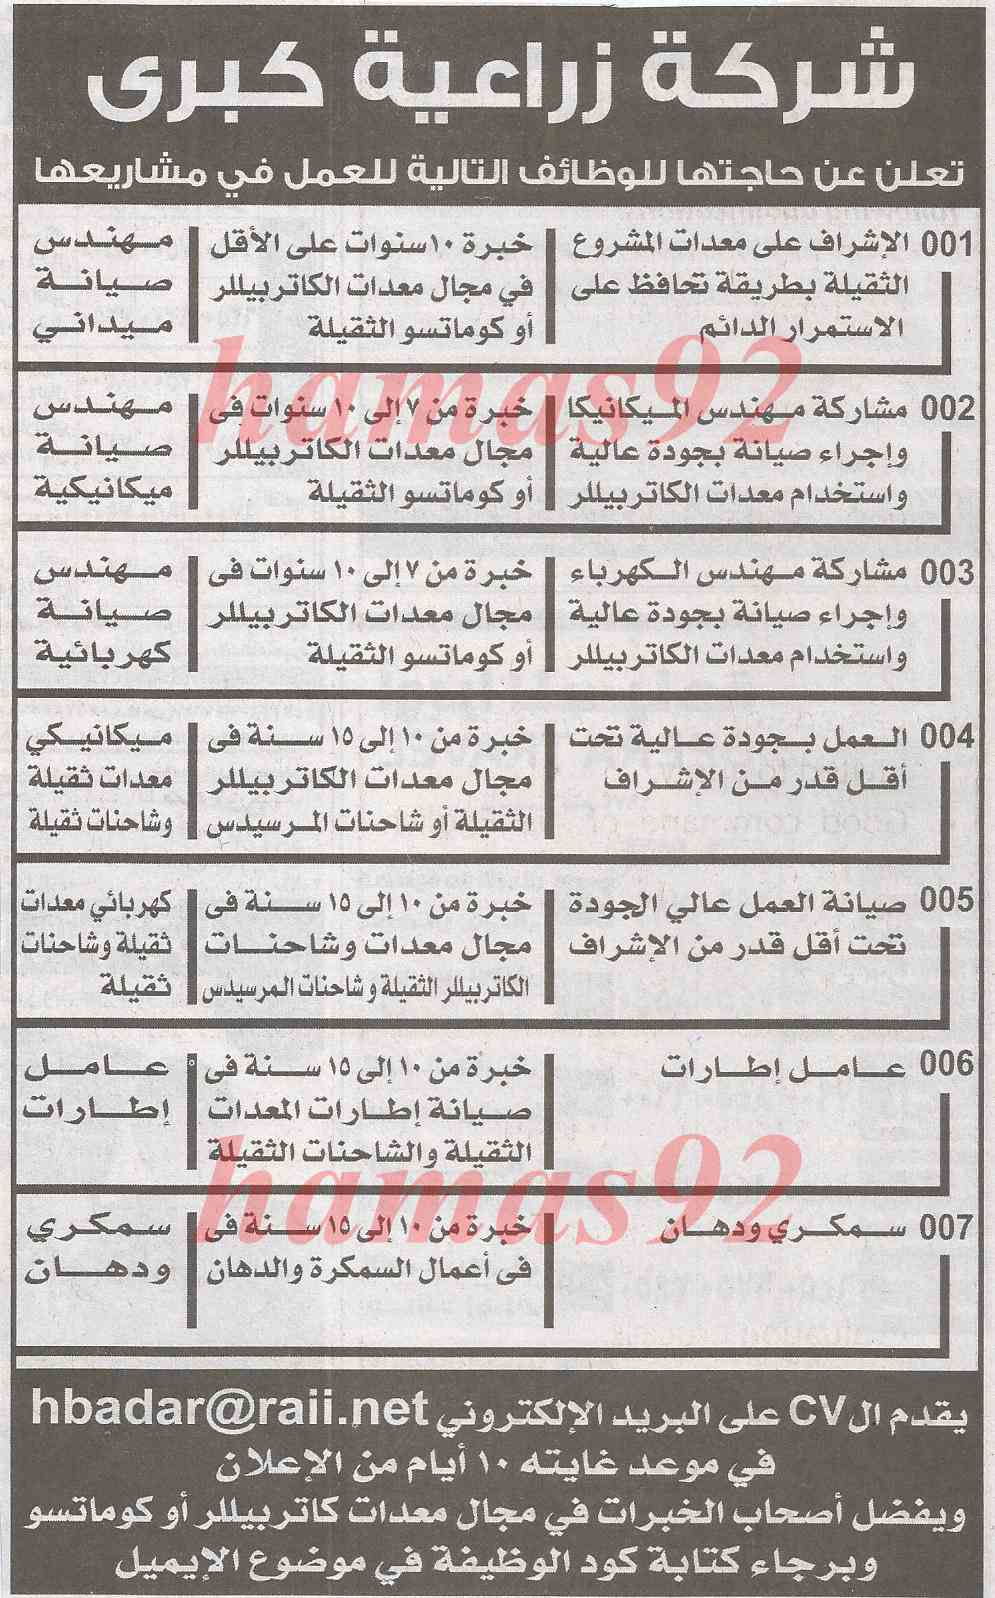 وظائف جريدة الاخبار اليوم الاحد 23-2-2014 , وظائف خالية في مصر الاحد 23 فبراير 2014